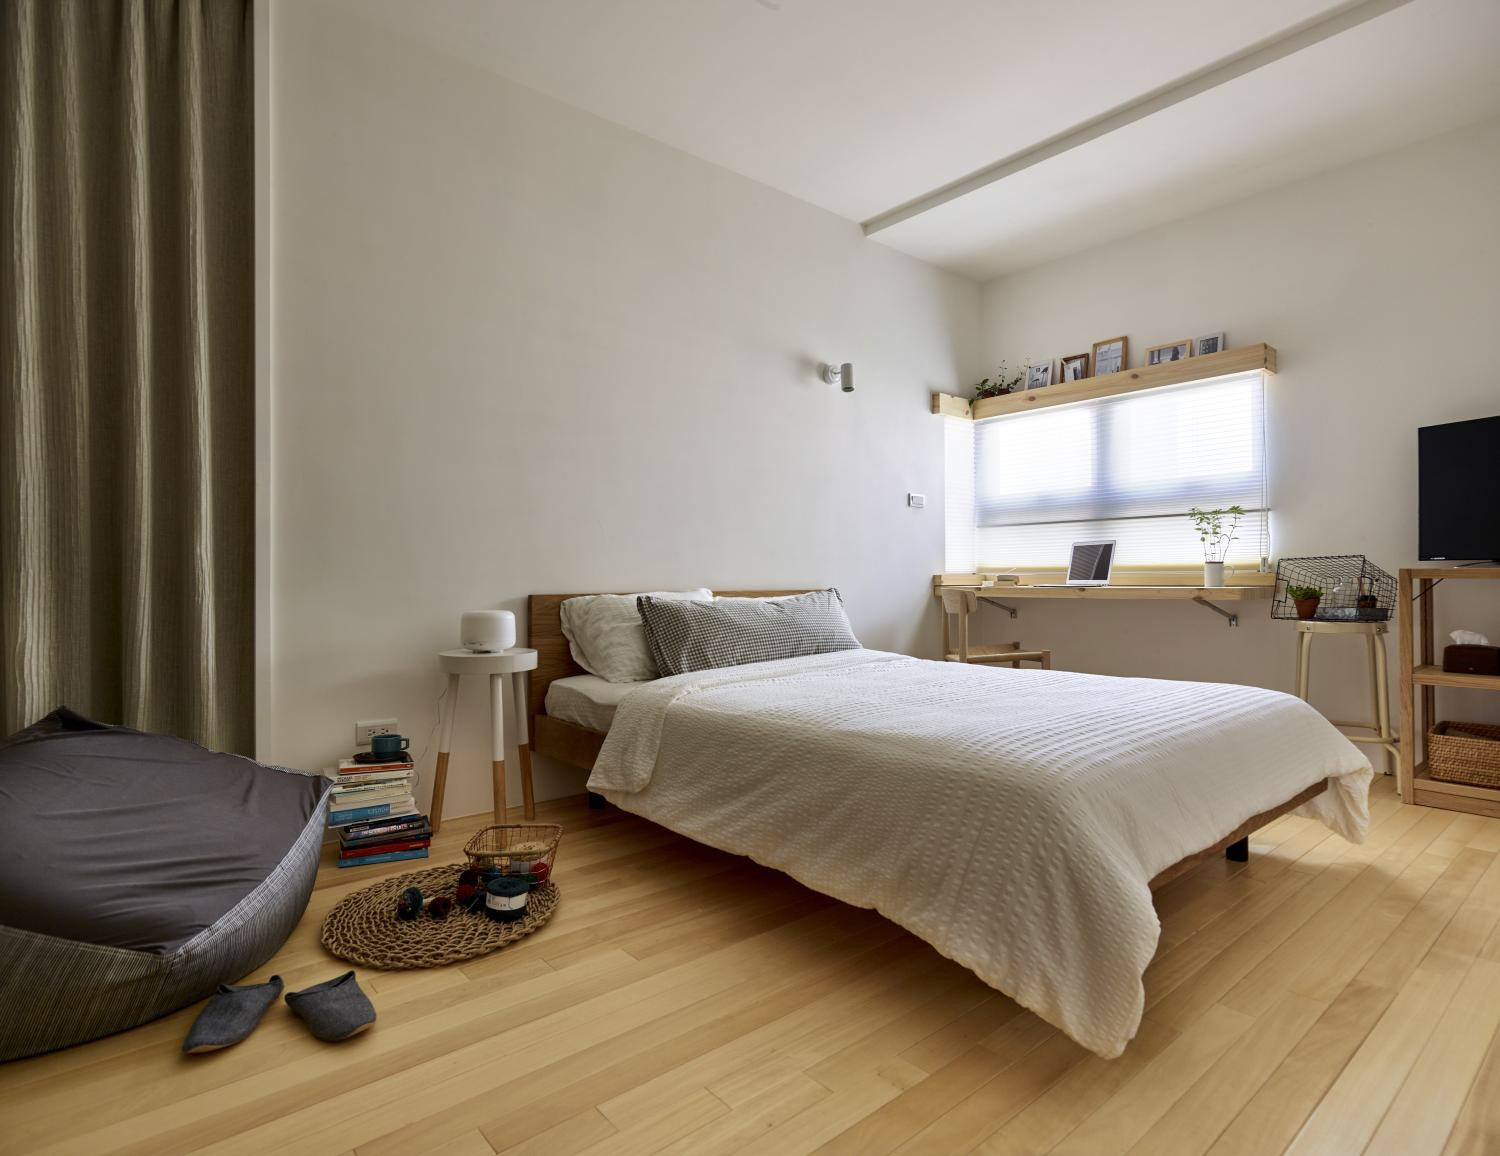 润都御园三居室丨日式风格融于自然的装修设计